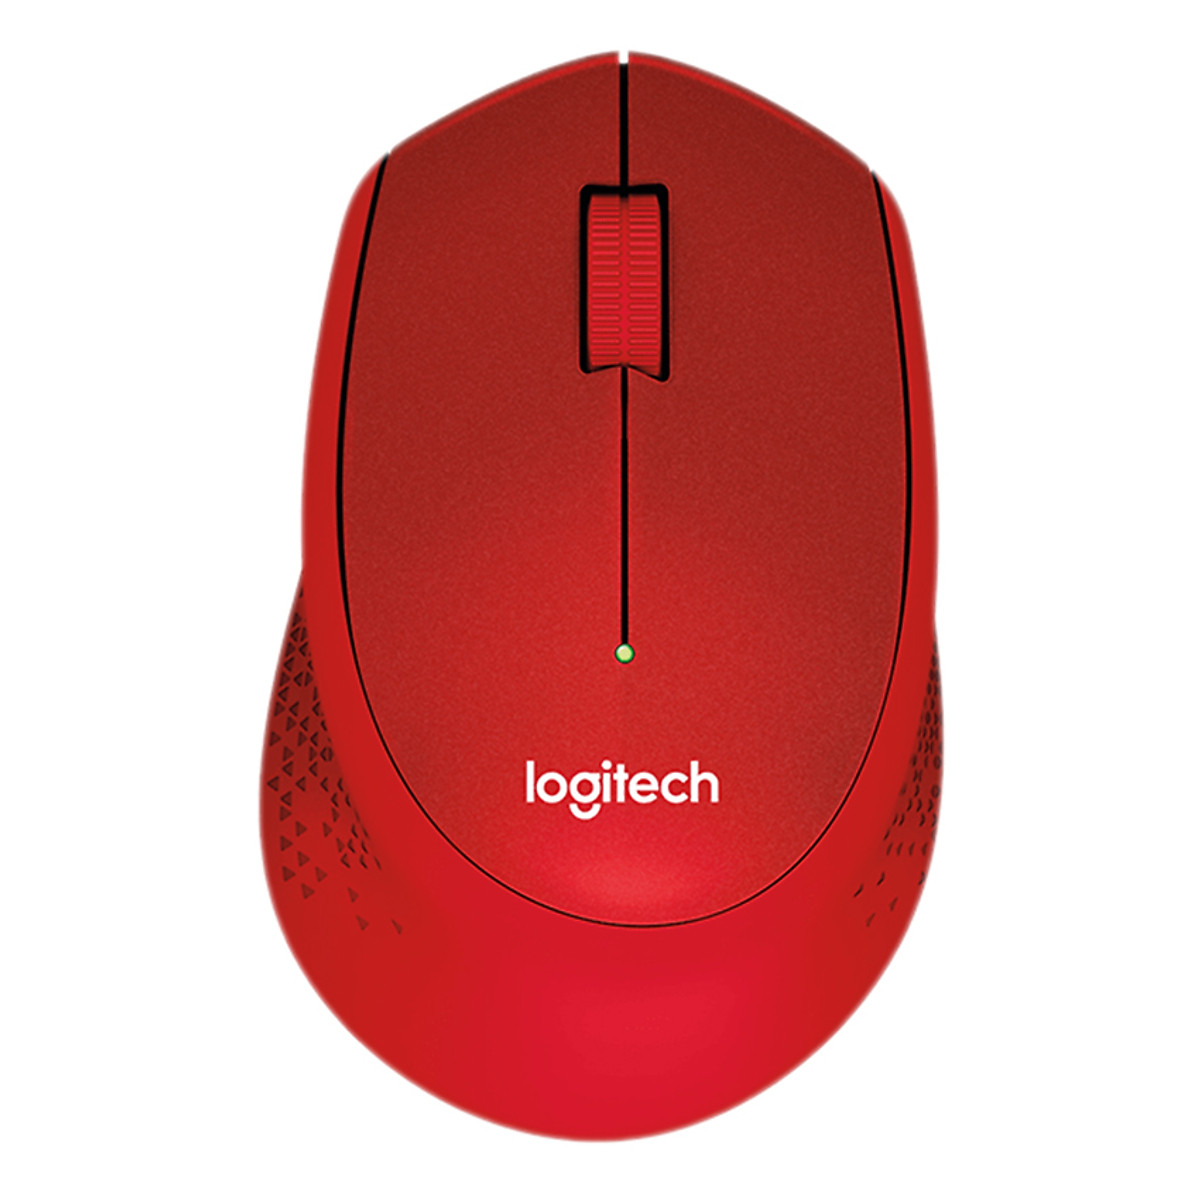 Chuột không dây Logitech M331, màu đỏ